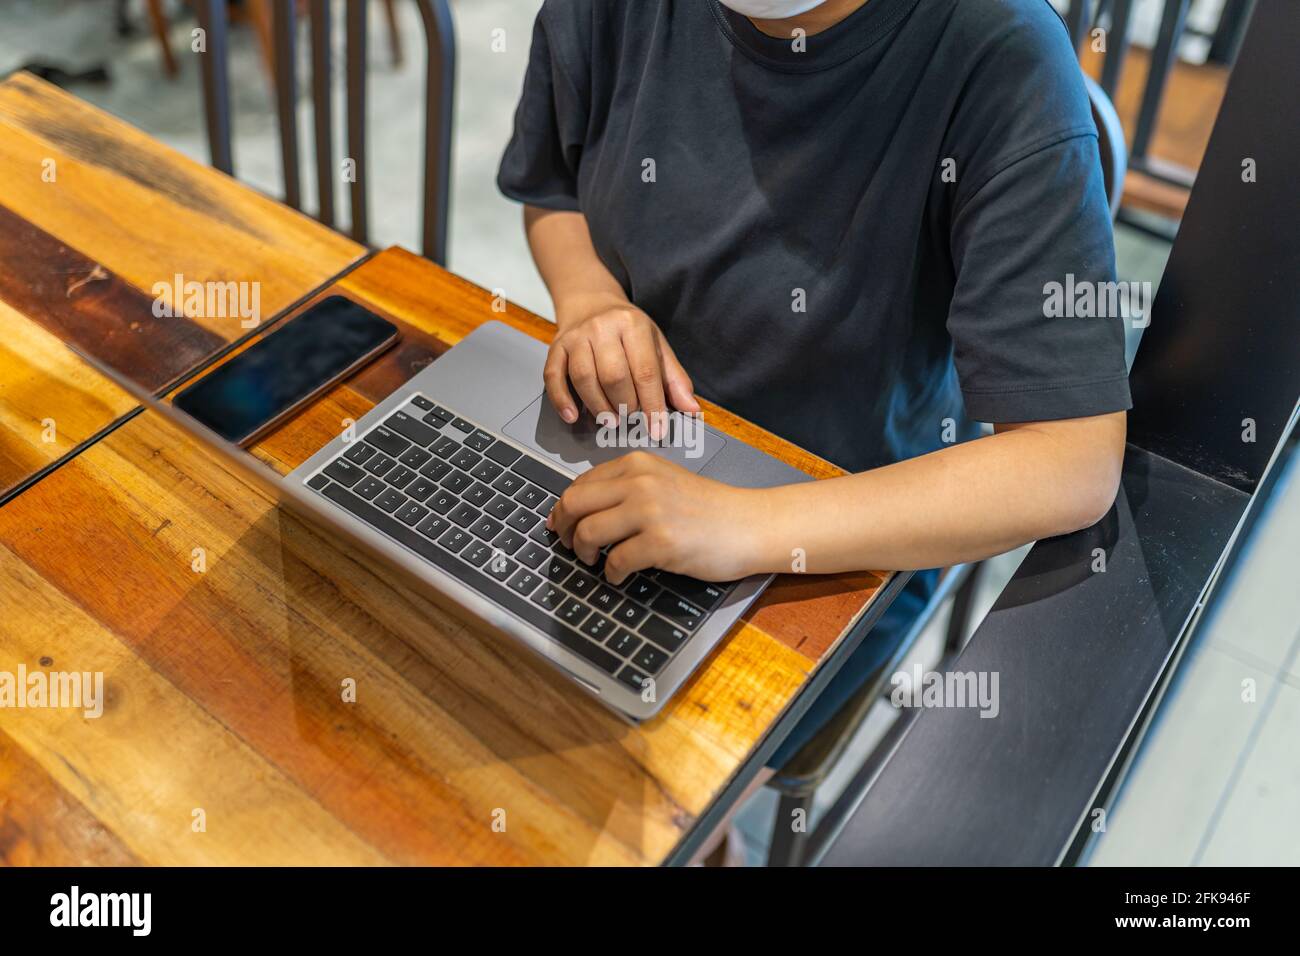 Vue en grand angle des femmes travaillant ou étudiant sur un ordinateur portable Banque D'Images